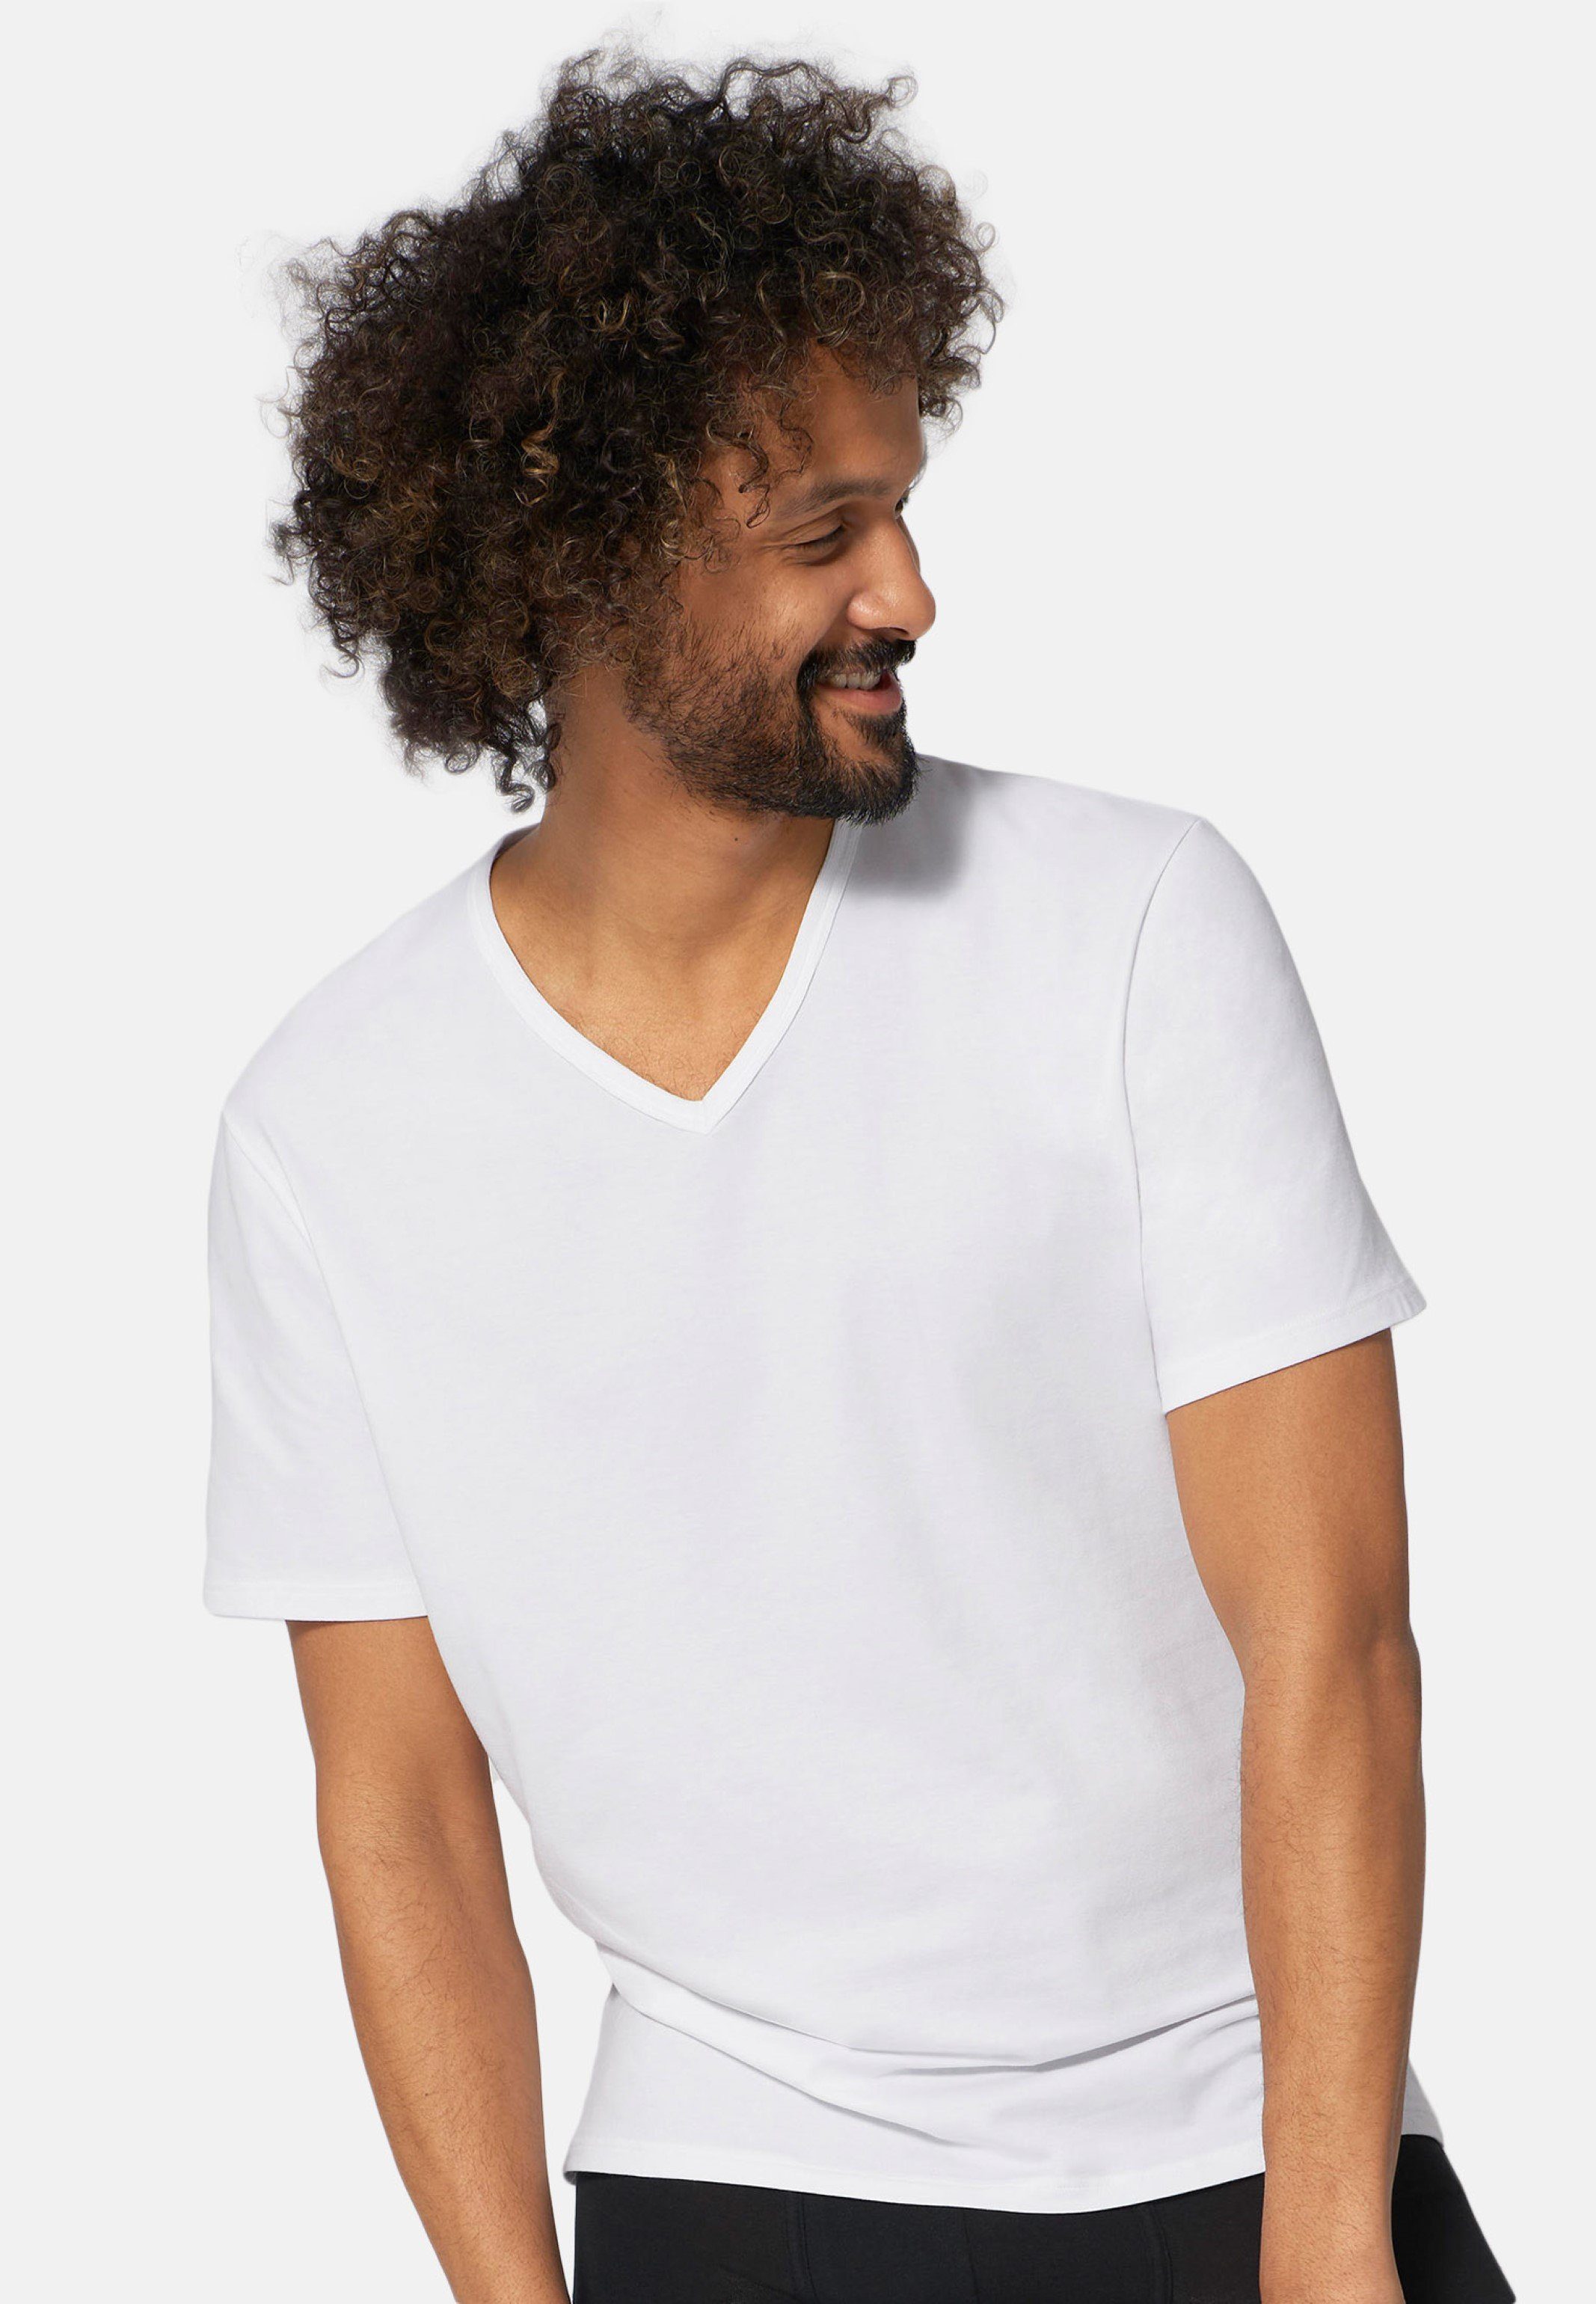 (1-St) Unterhemd Baumwolle Unterhemd / Weiß - auf Sloggi Go der Kurzarm Angenehm Haut - Shirt Cotton Organic -